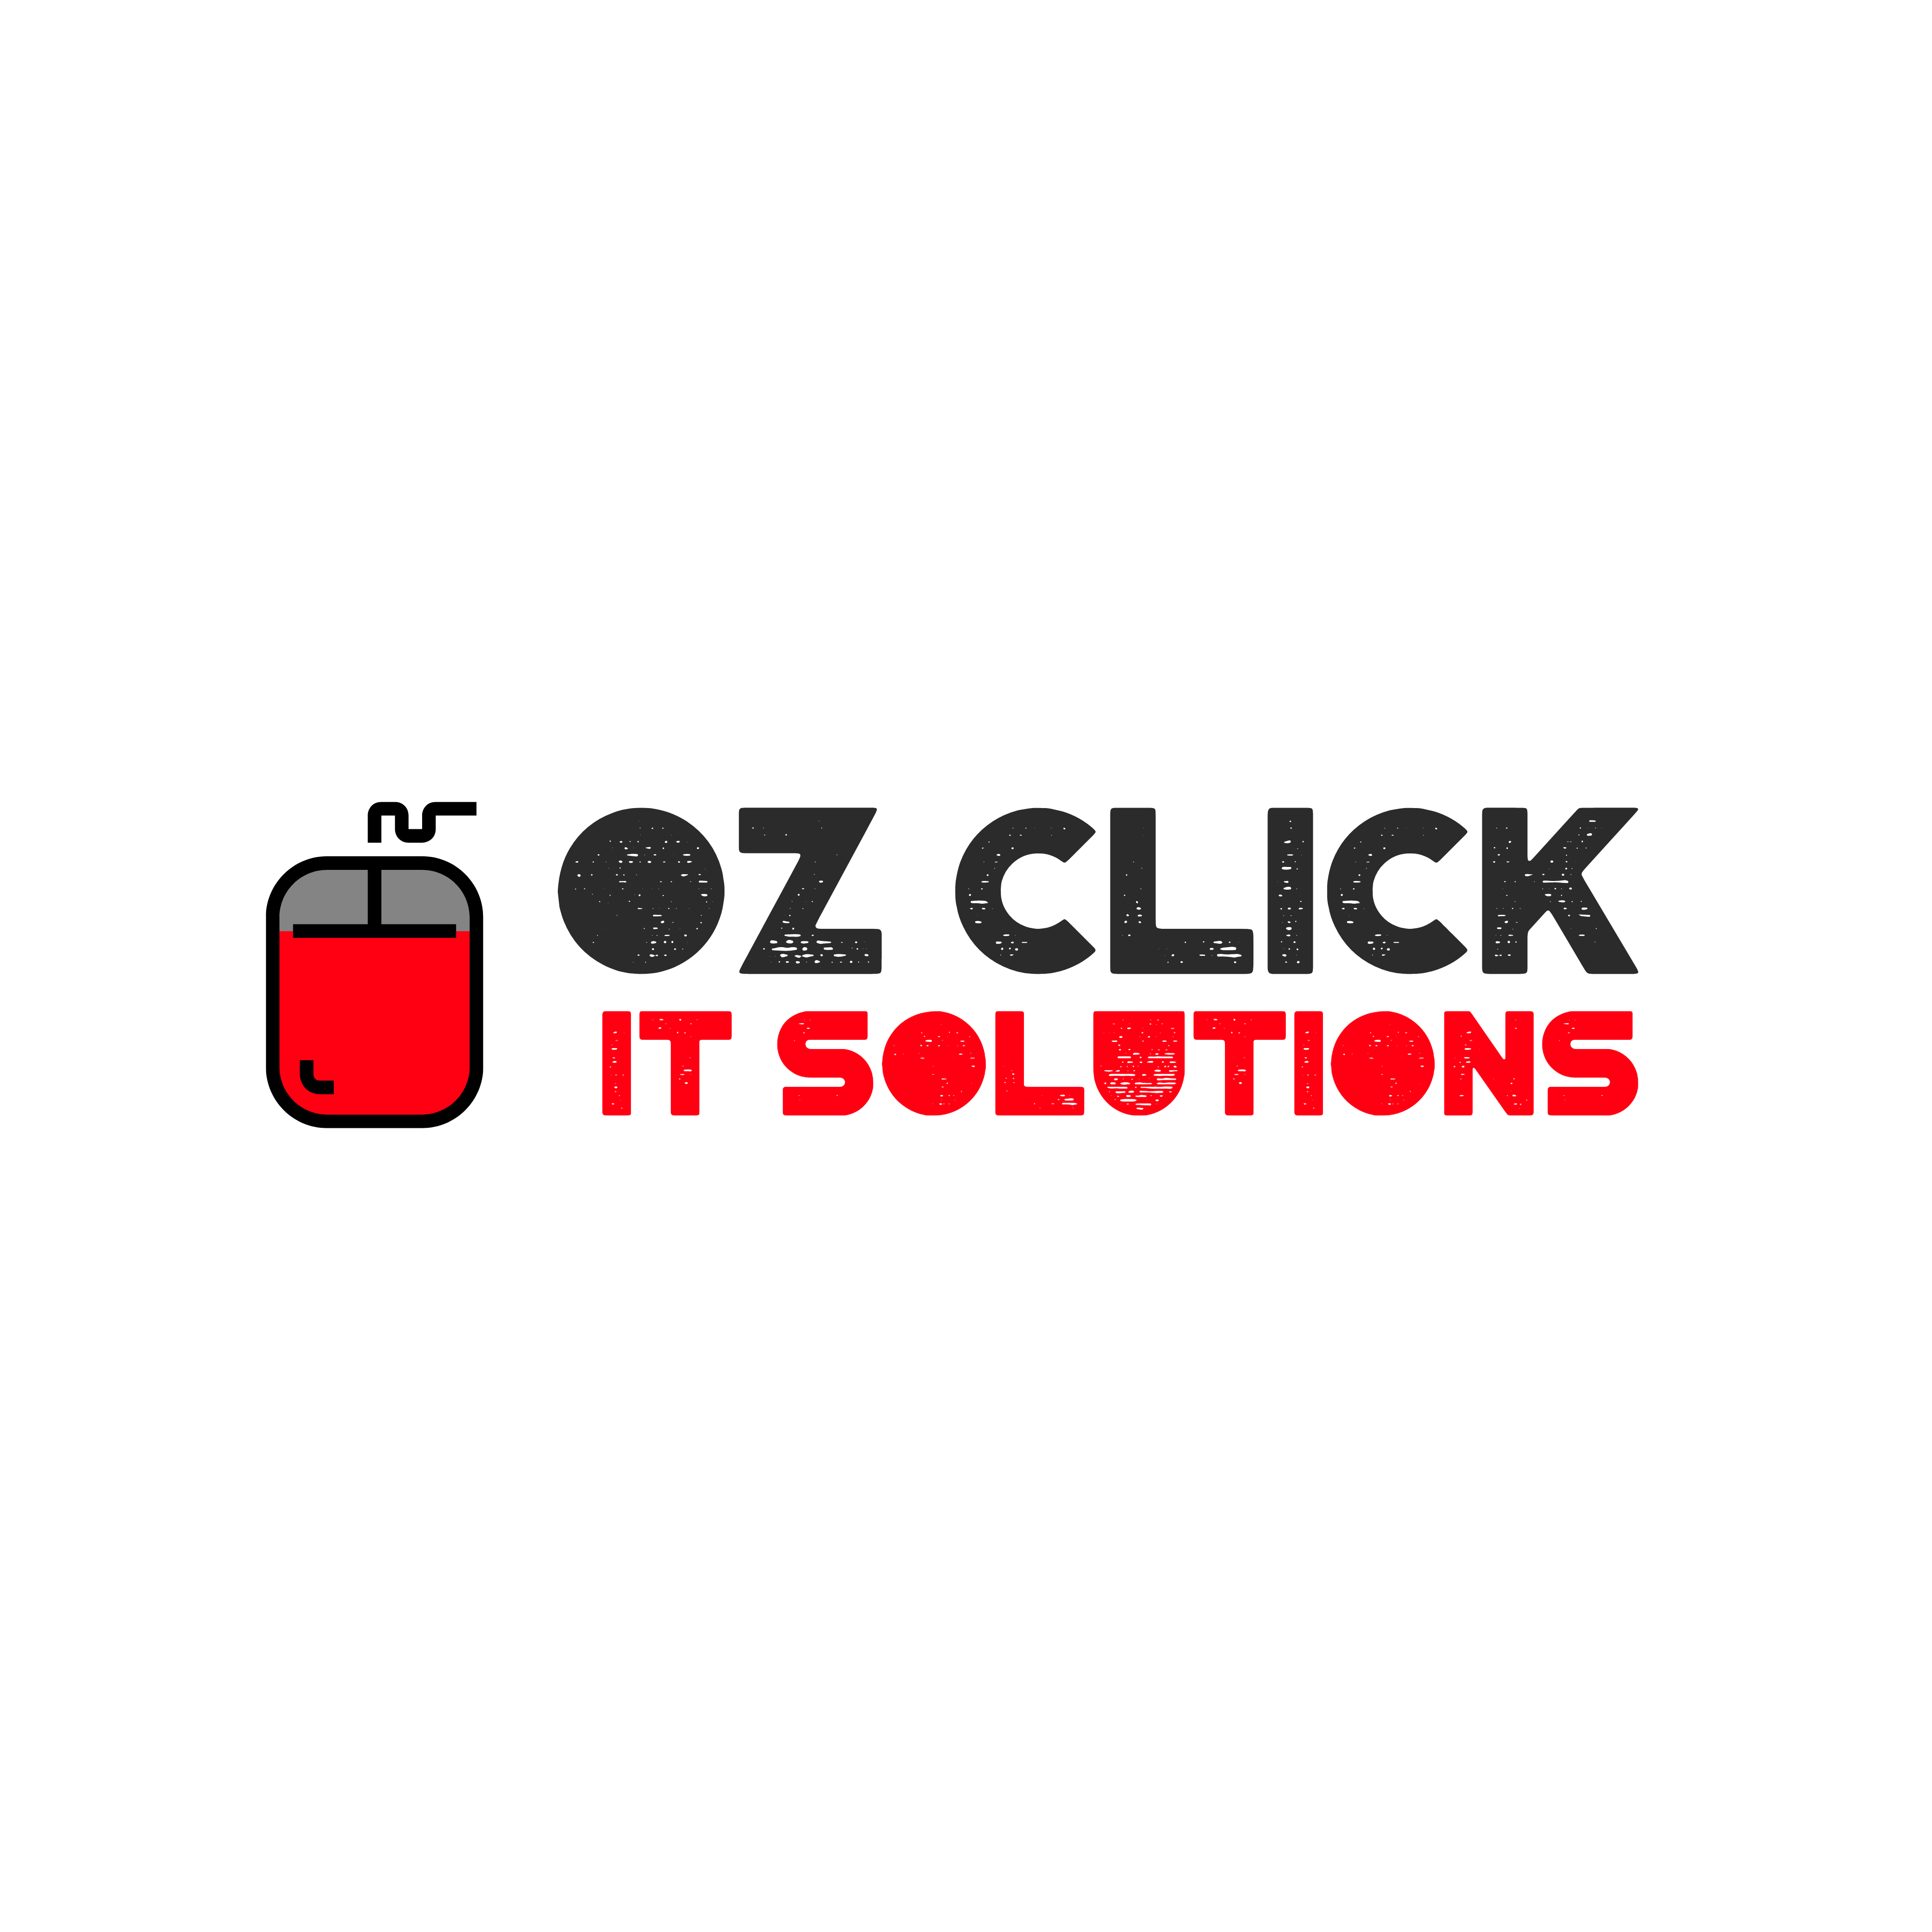 OZ CLICK IT Solutions